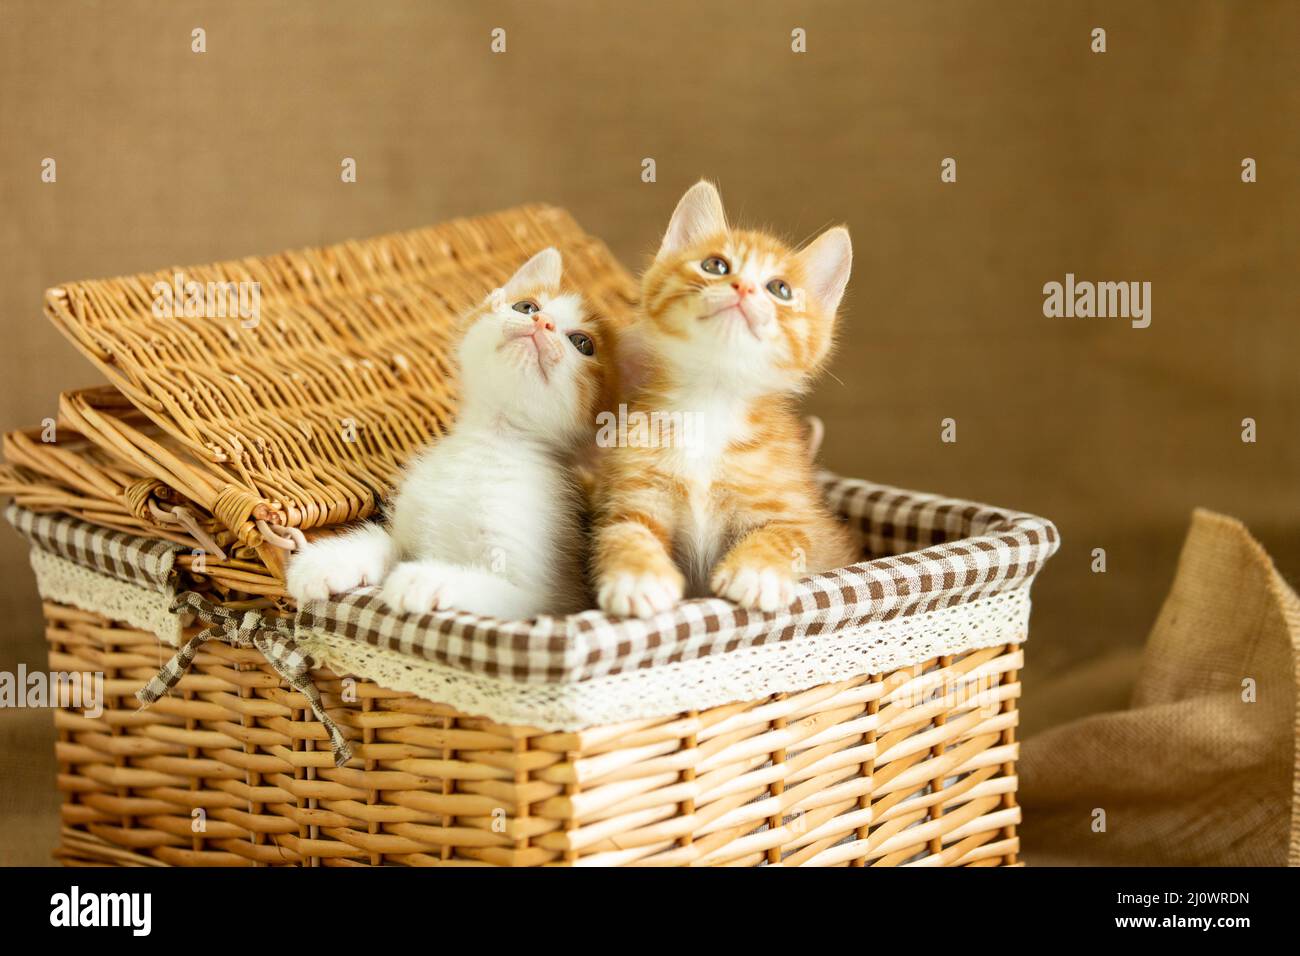 Deux chatons regardant dans un panier en rotin - photo de stock Banque D'Images